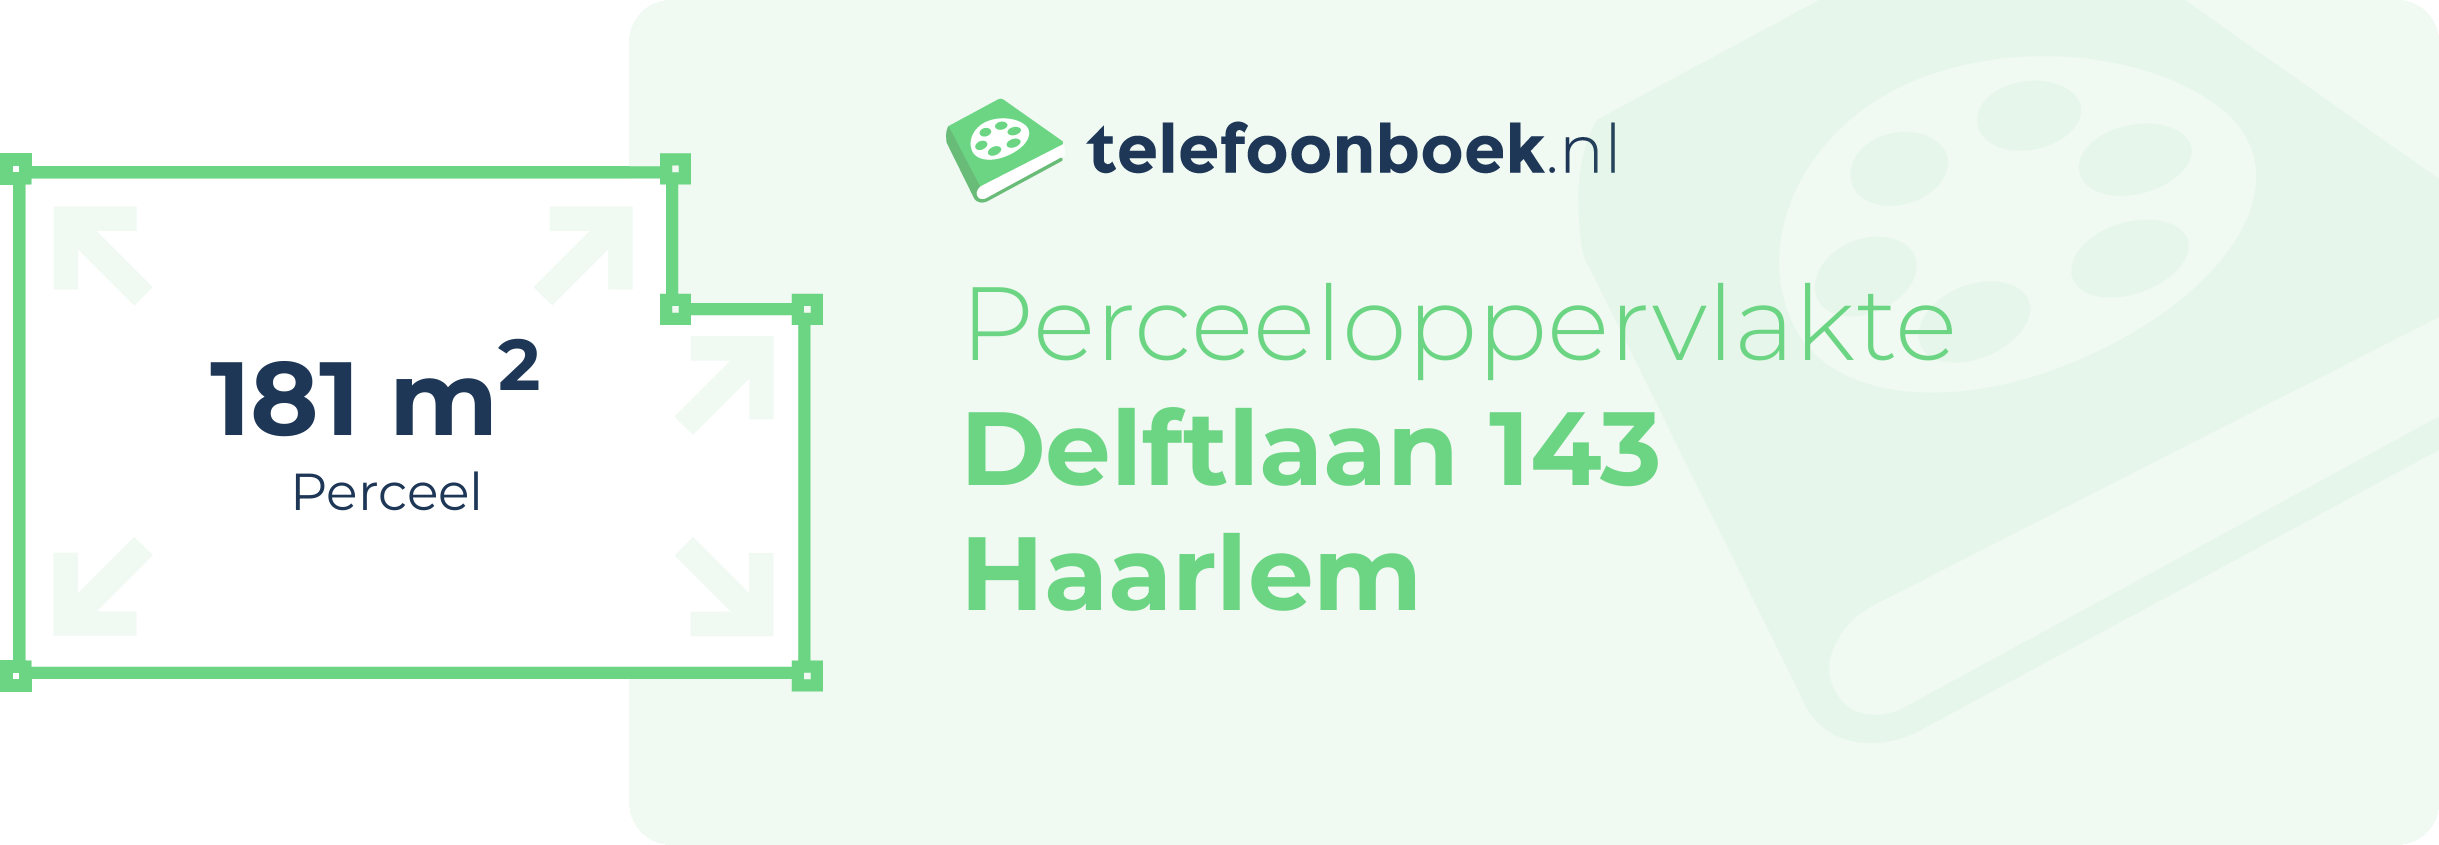 Perceeloppervlakte Delftlaan 143 Haarlem